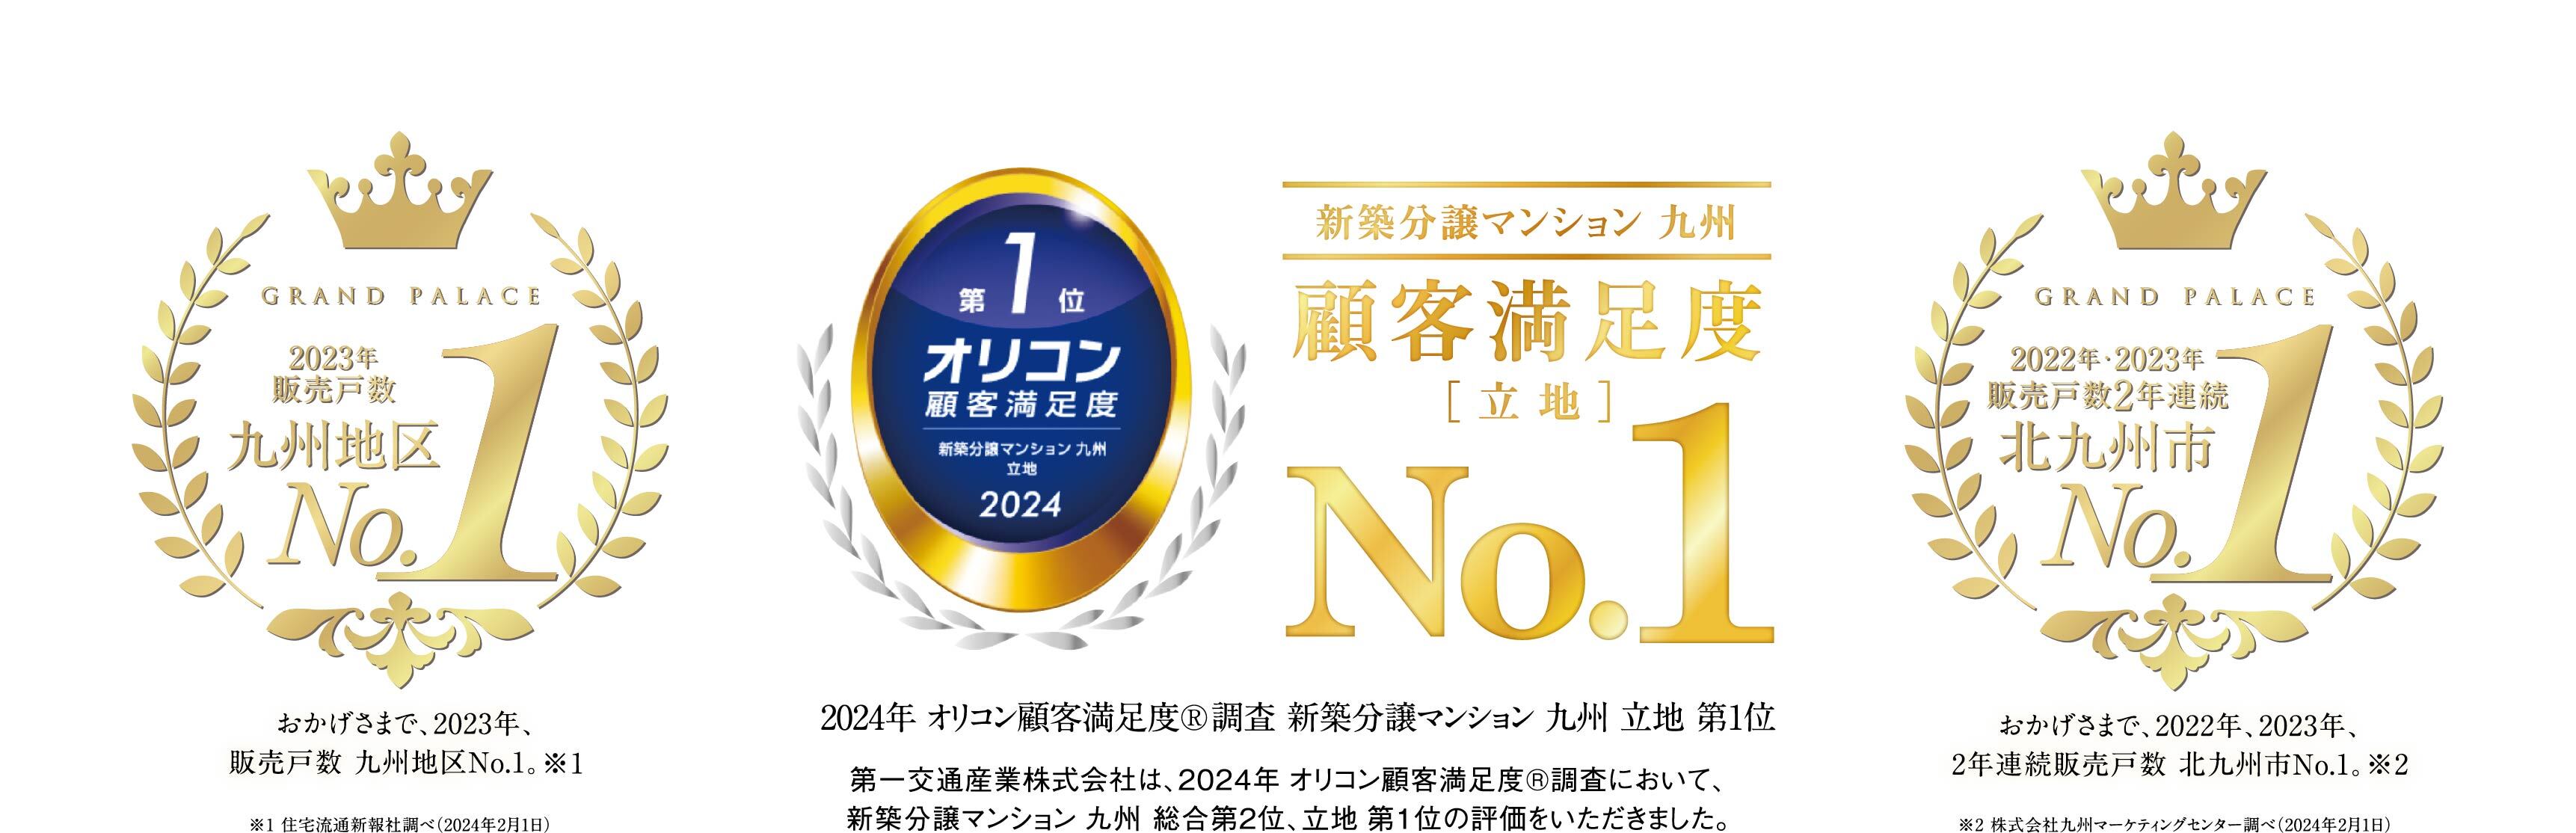 販売戸数 九州地区No.1 オリコン顧客満足度第一位 販売戸数 北九州地区No.1 ロゴ